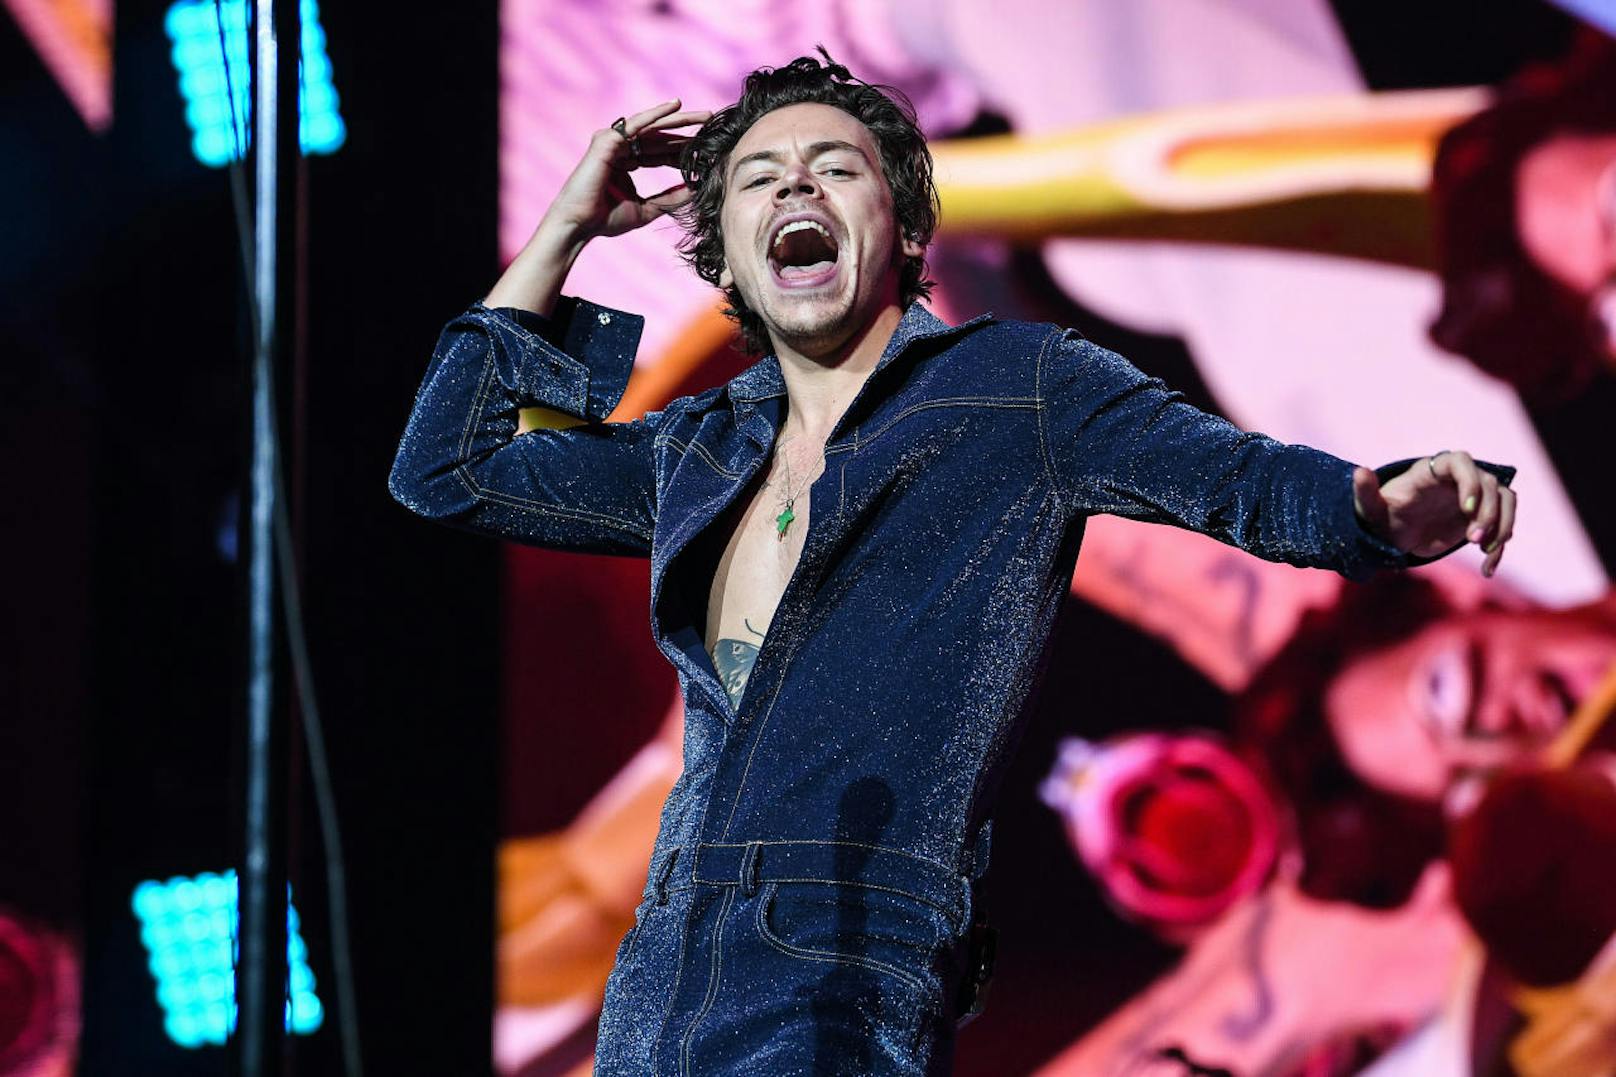 Der britische Musiker <b>Harry Styles</b> ist nach seiner "One Direction"-Karriere als Solokünstler unterwegs.